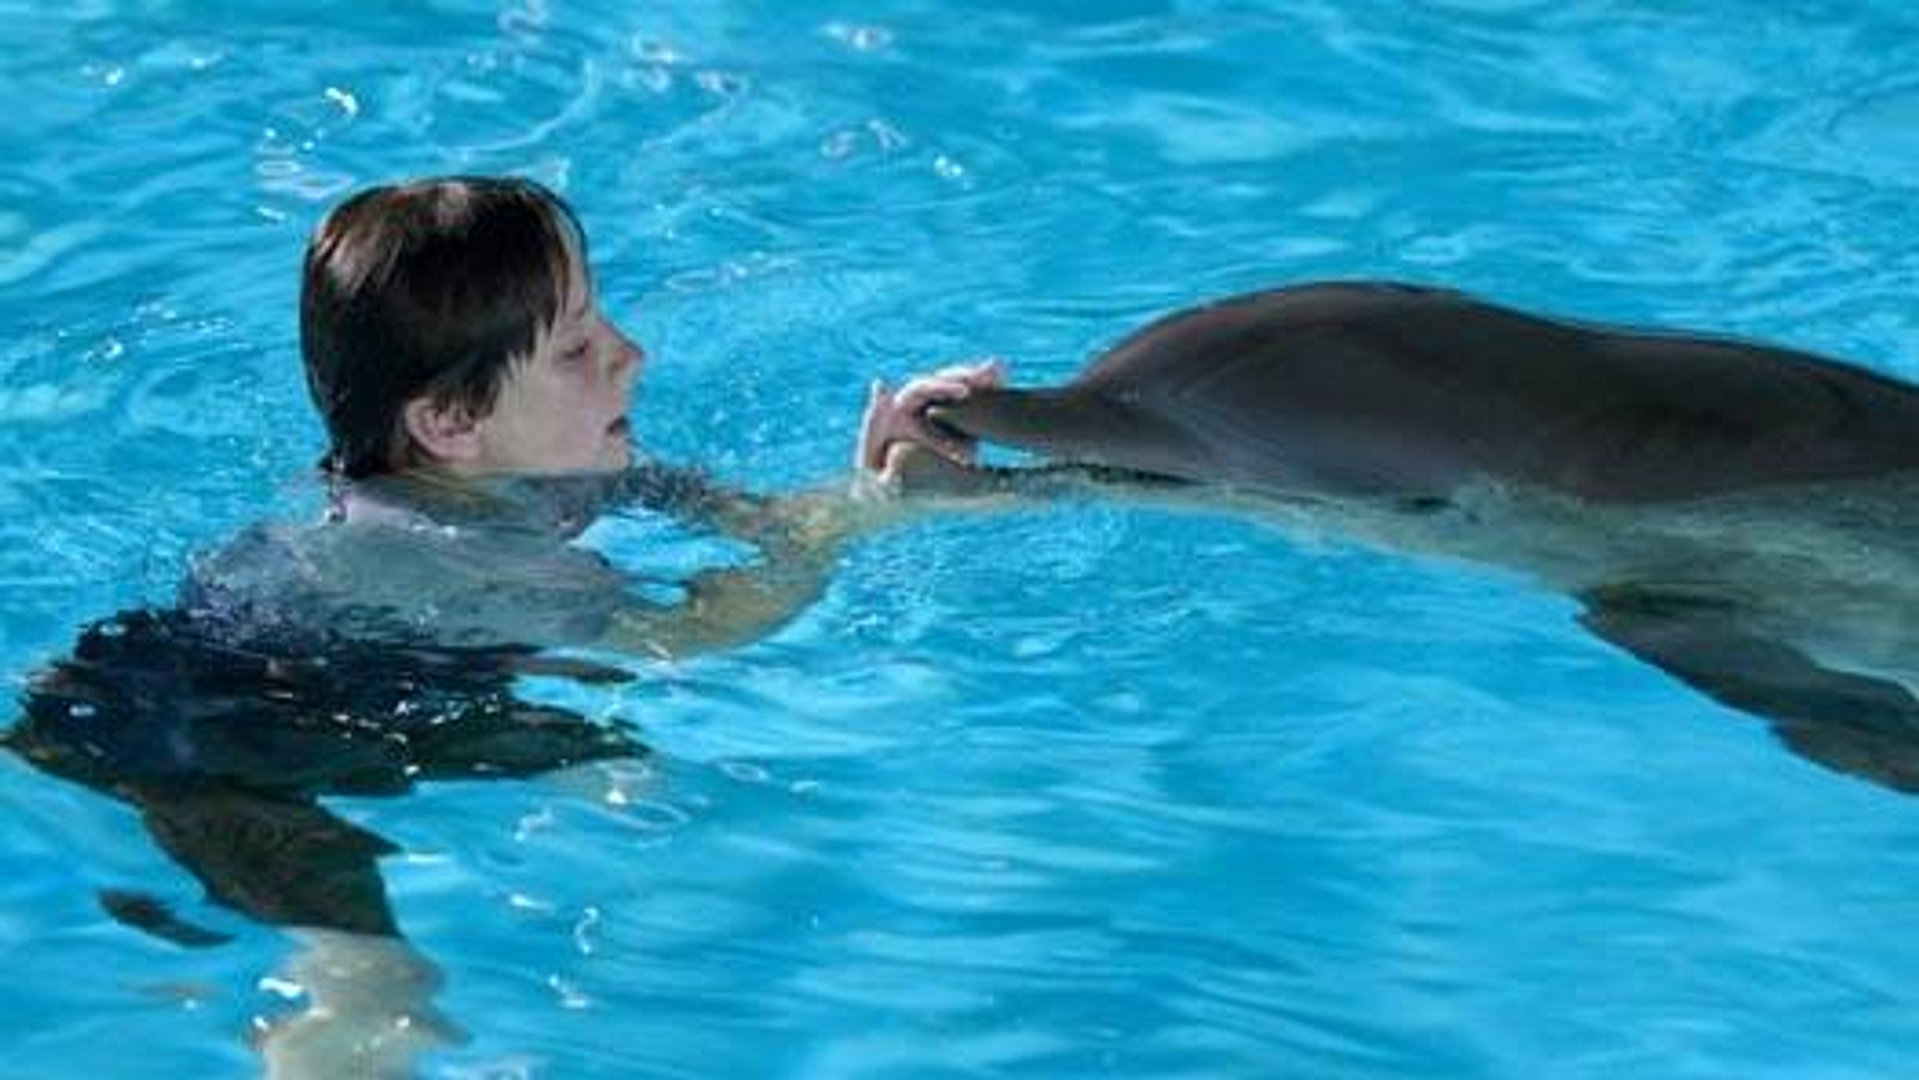 Gutten og delfinen